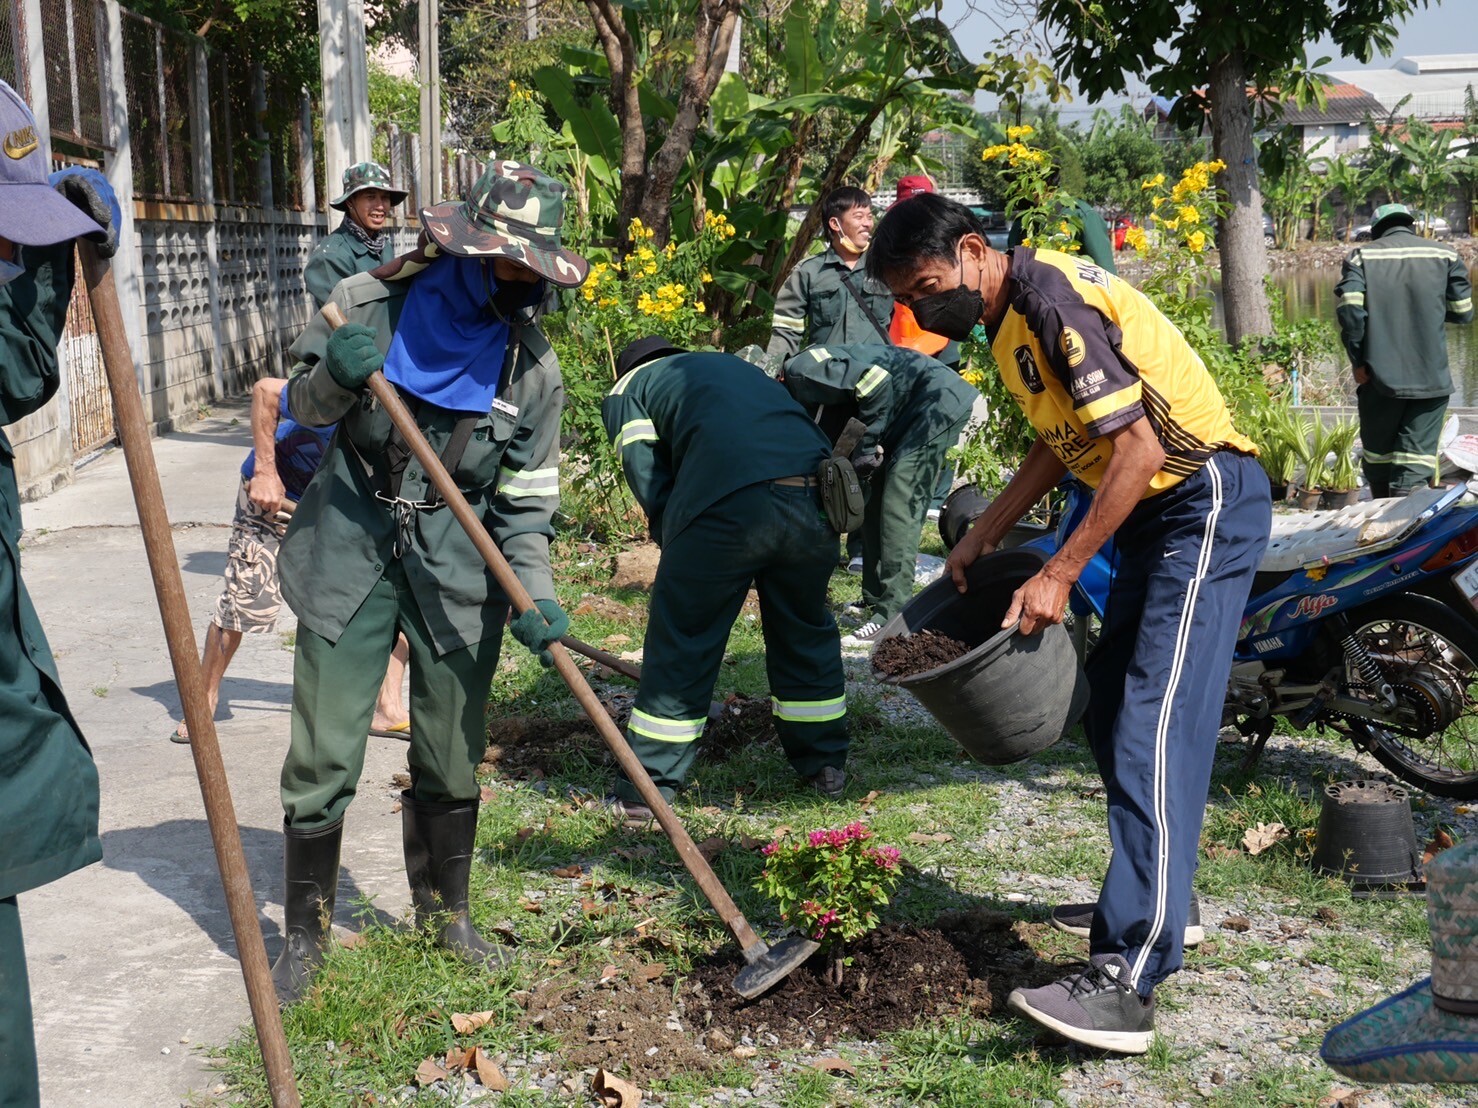 ซีแอนด์จีฯร่วมกิจกรรมปลูกต้นไม้เพิ่มพื้นที่สีเขียว ร่วมกับ ฝ่ายรักษาความสะอาดและสวนสาธารณะ สำนักงานเขตหนองแขม และประชาชนในชุมชนวัดวงษ์ลาภาราม